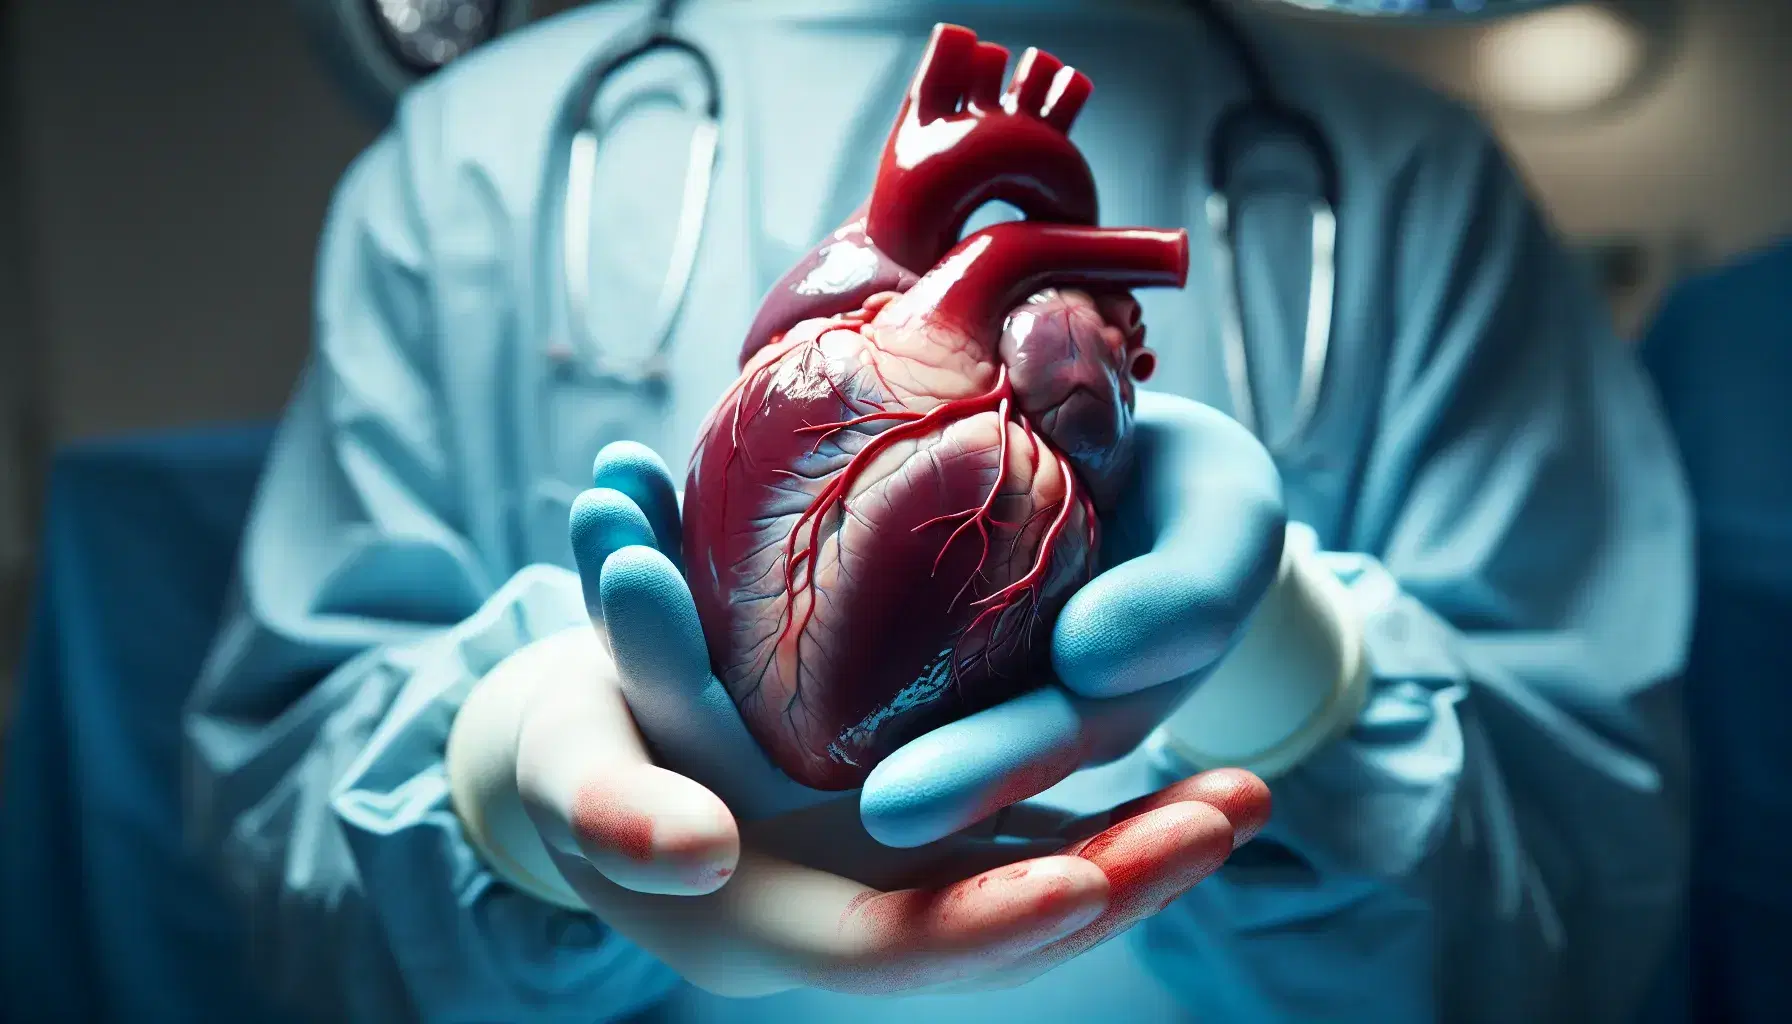 Mano in guanto di lattice azzurro tiene delicatamente un cuore umano per trapianto, con arterie legate, in sala operatoria sfocata.